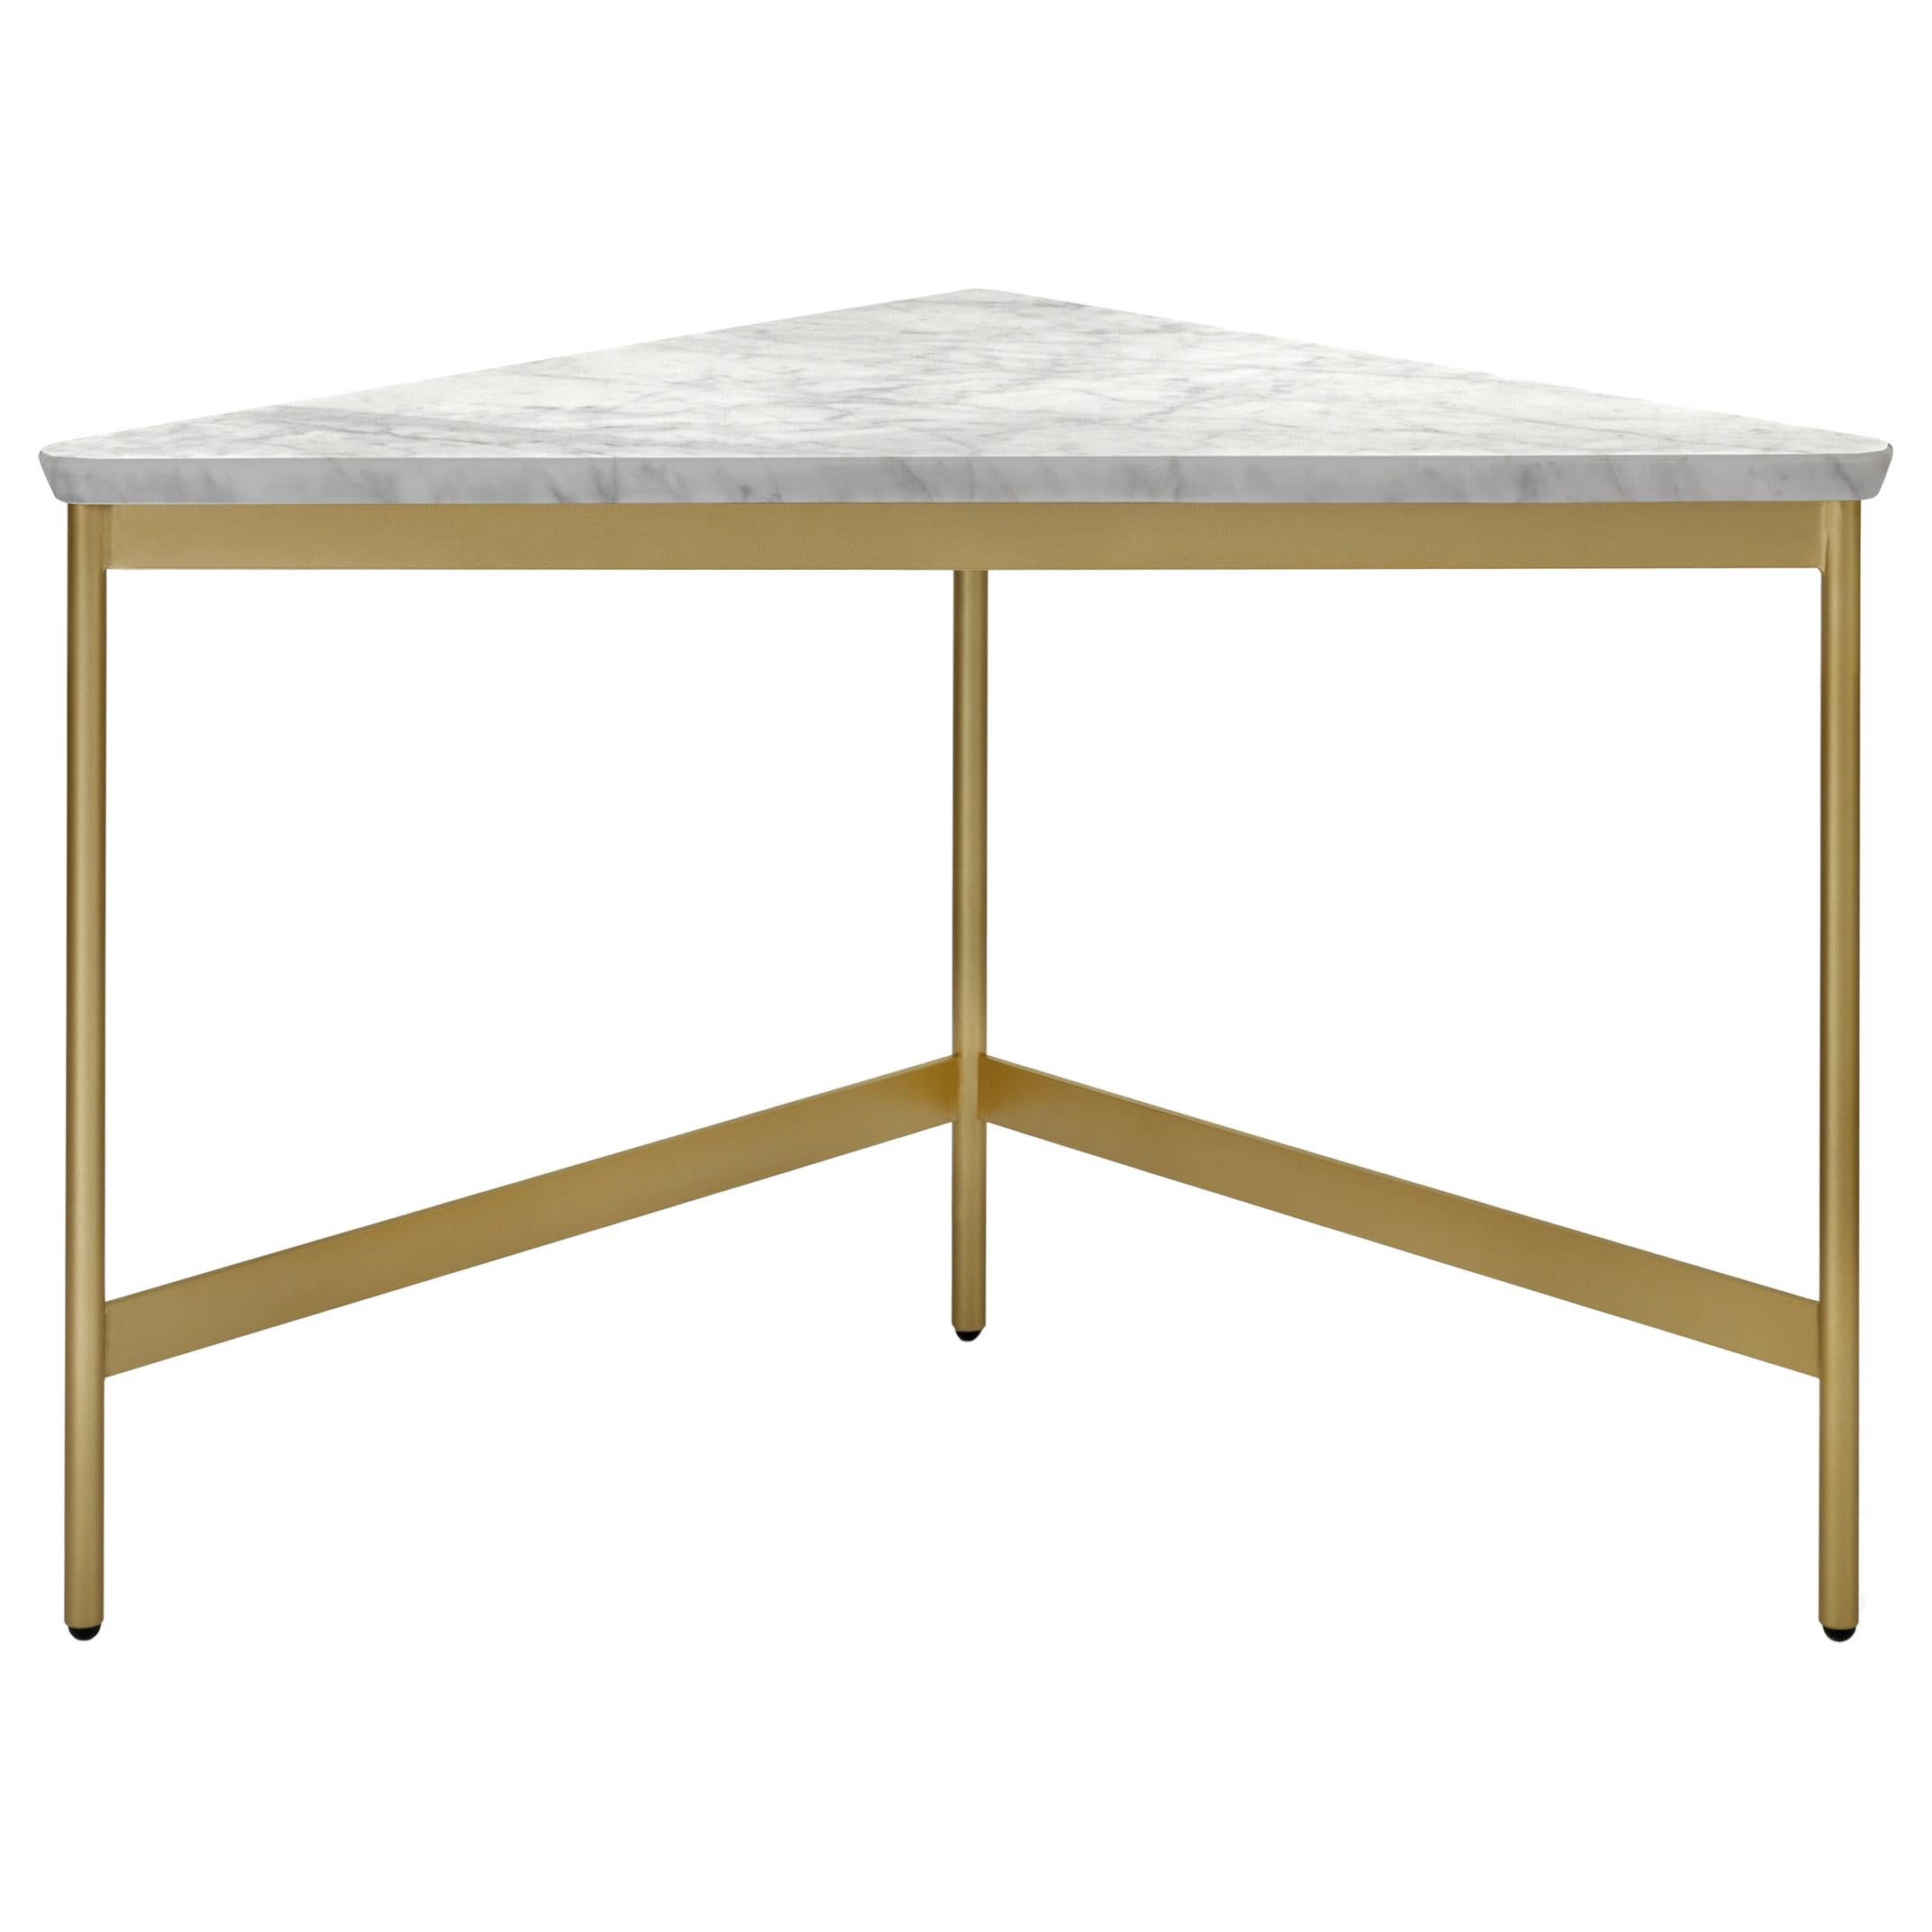 Arflex Capilano 55cm Small Table in White Carrara Marble-Top by Luca Nichetto